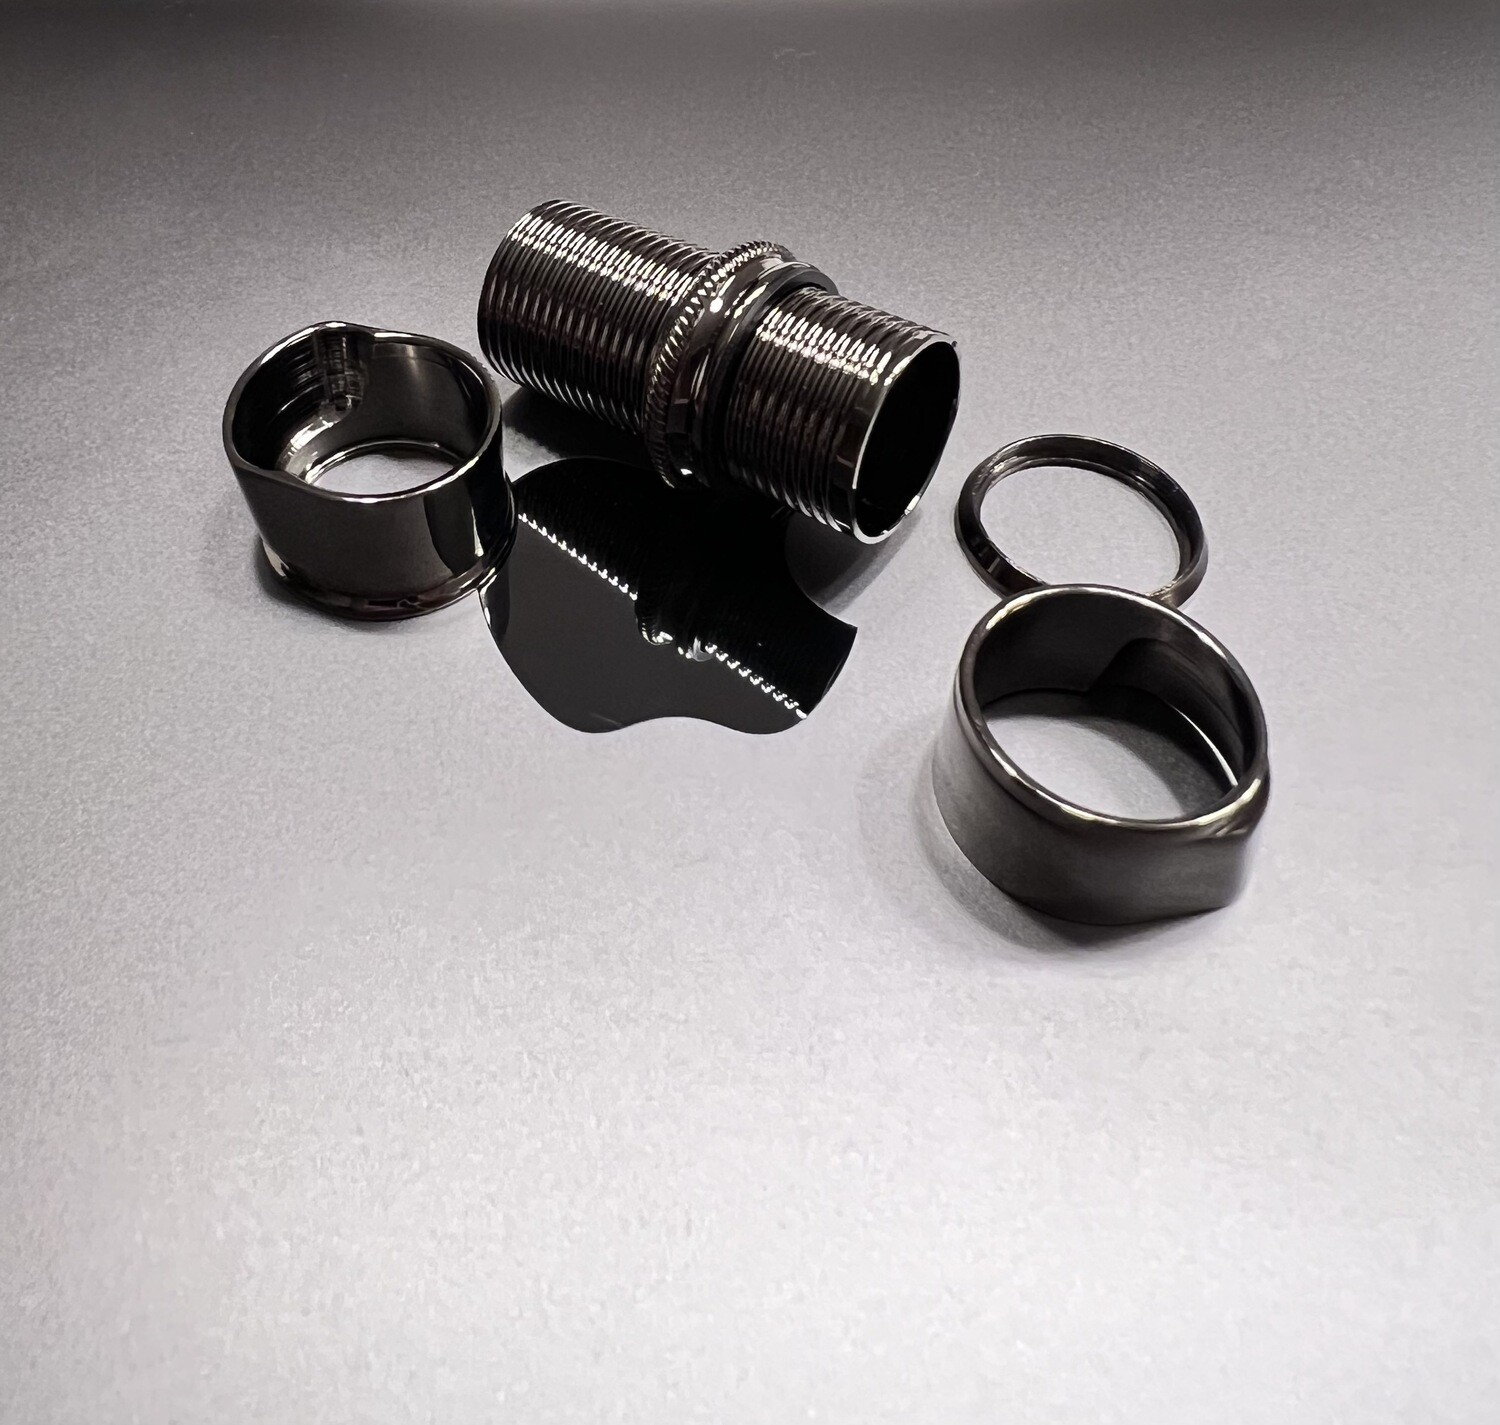 Lemke Concepts Spinning Rollenhalter Nickelsilber black nickel (Skeleton Hardware only)